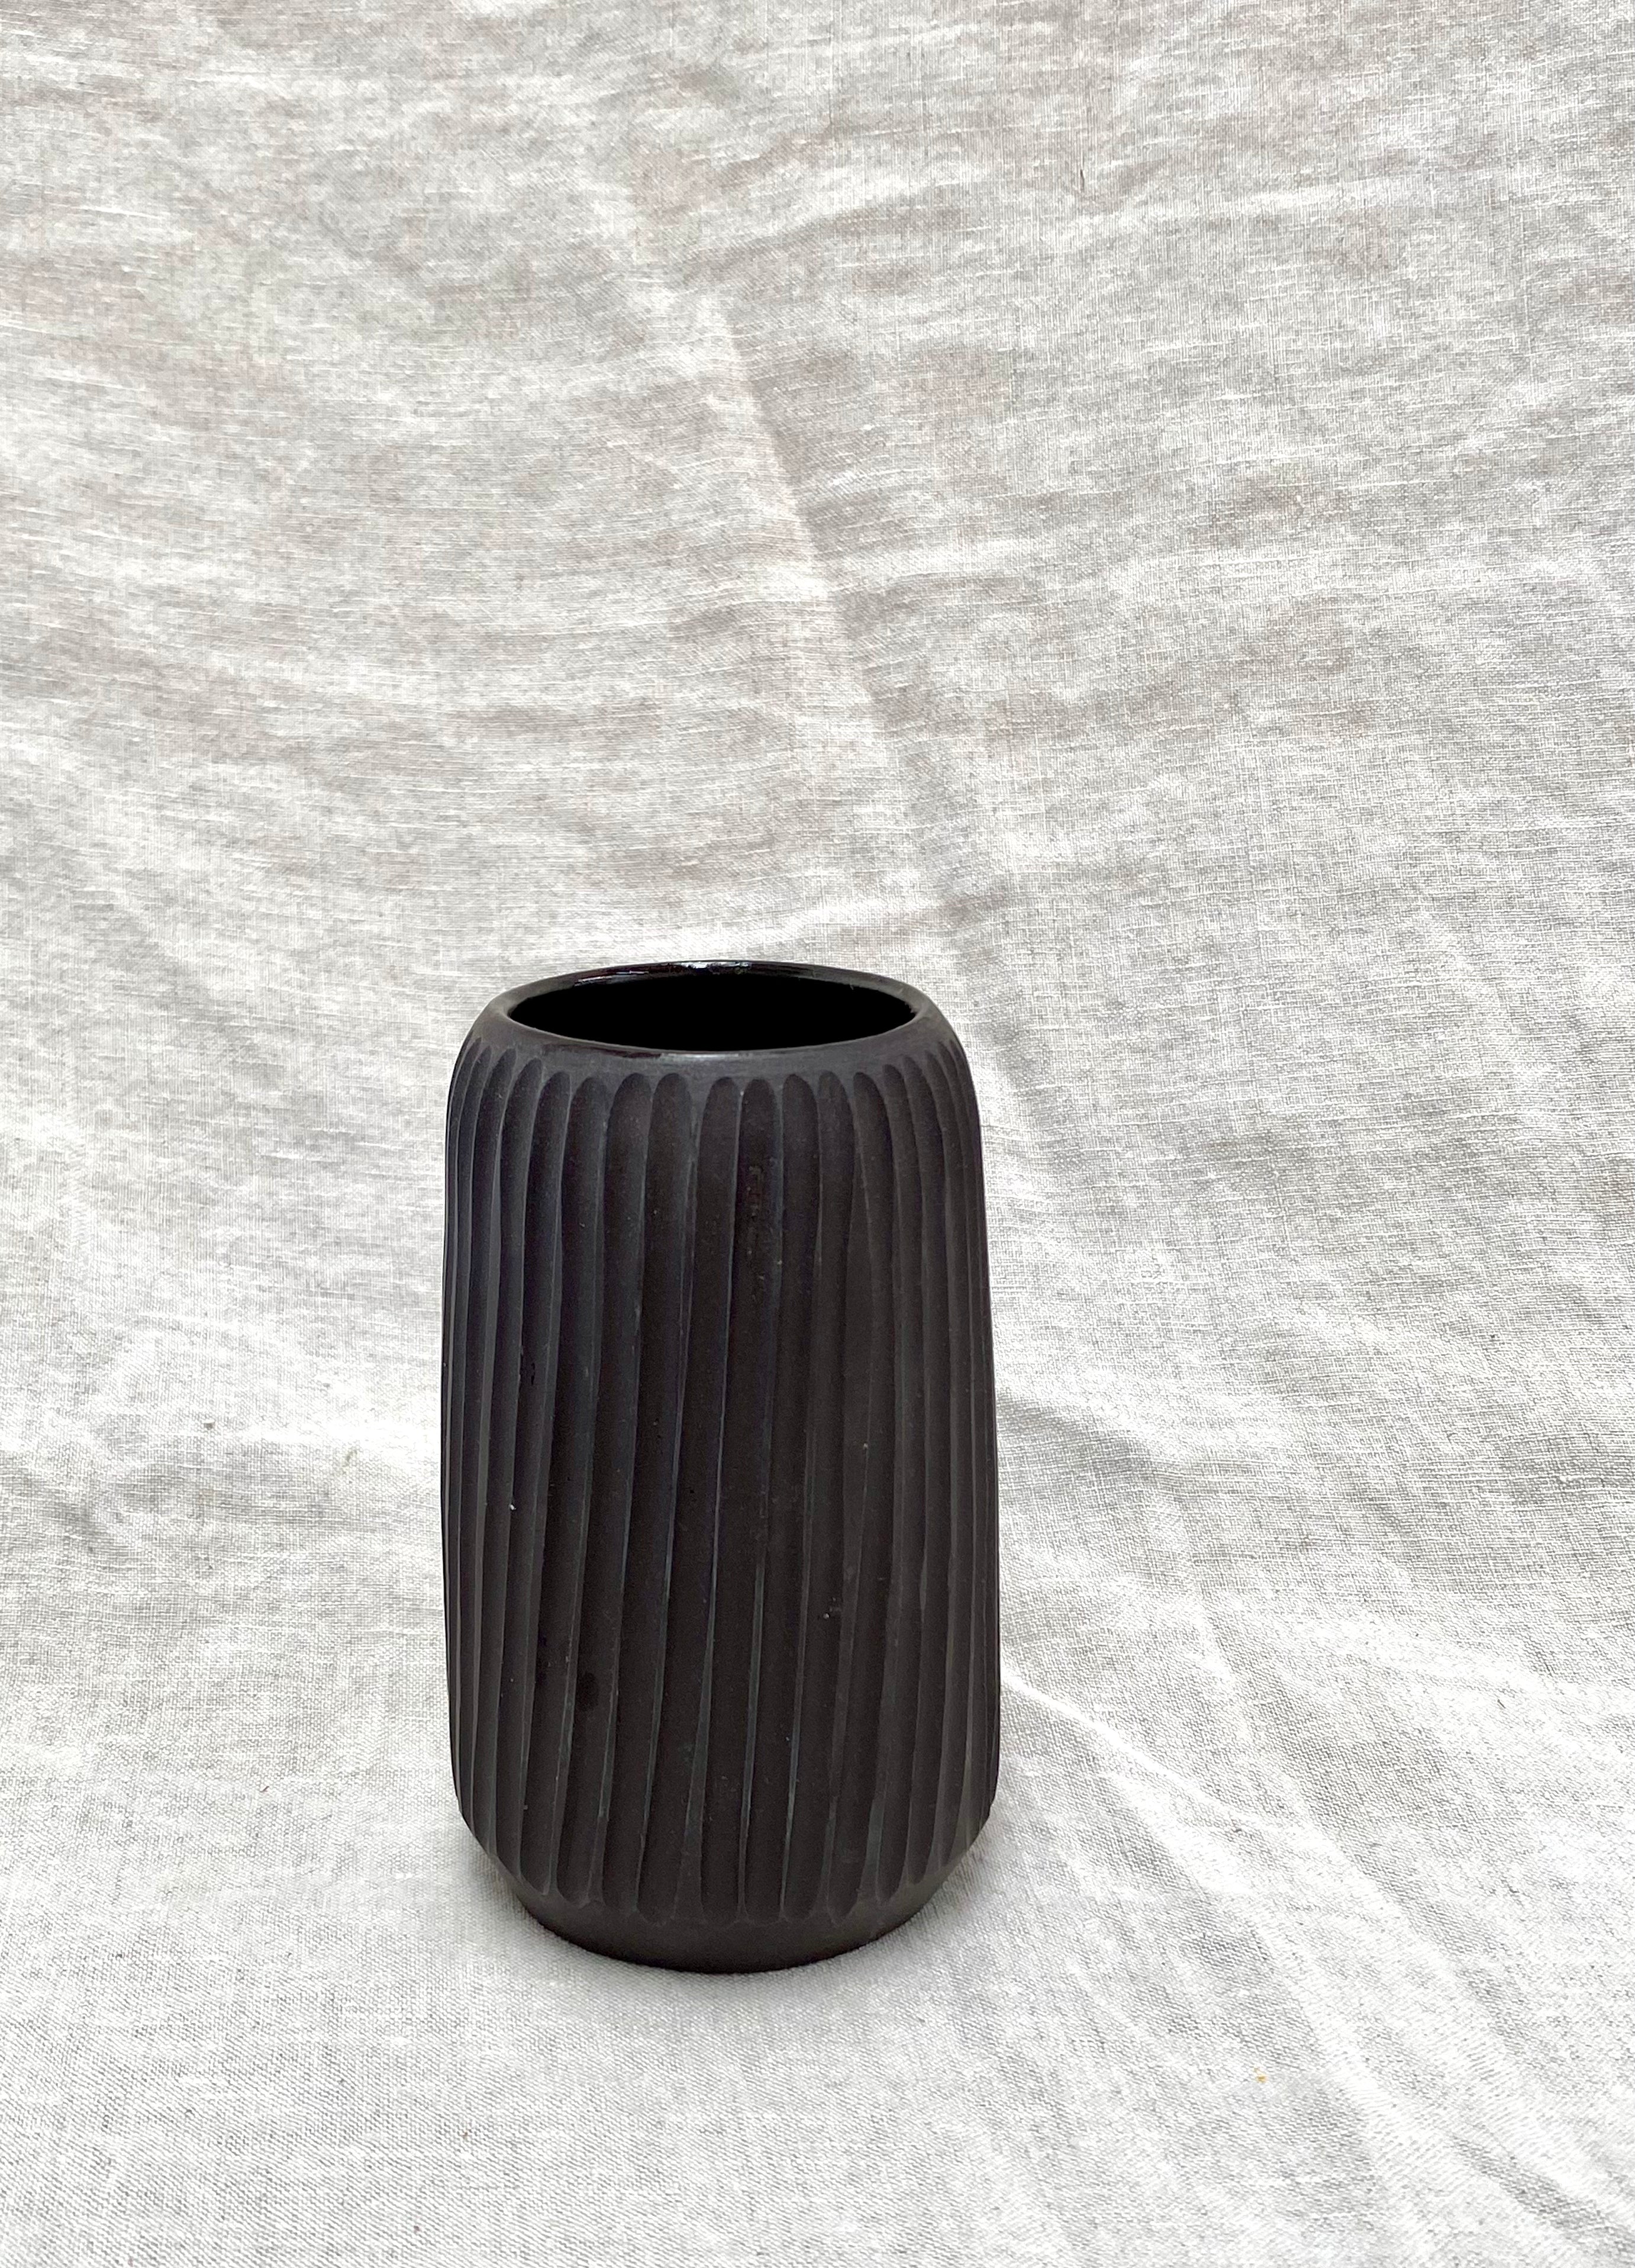 Black bud vase